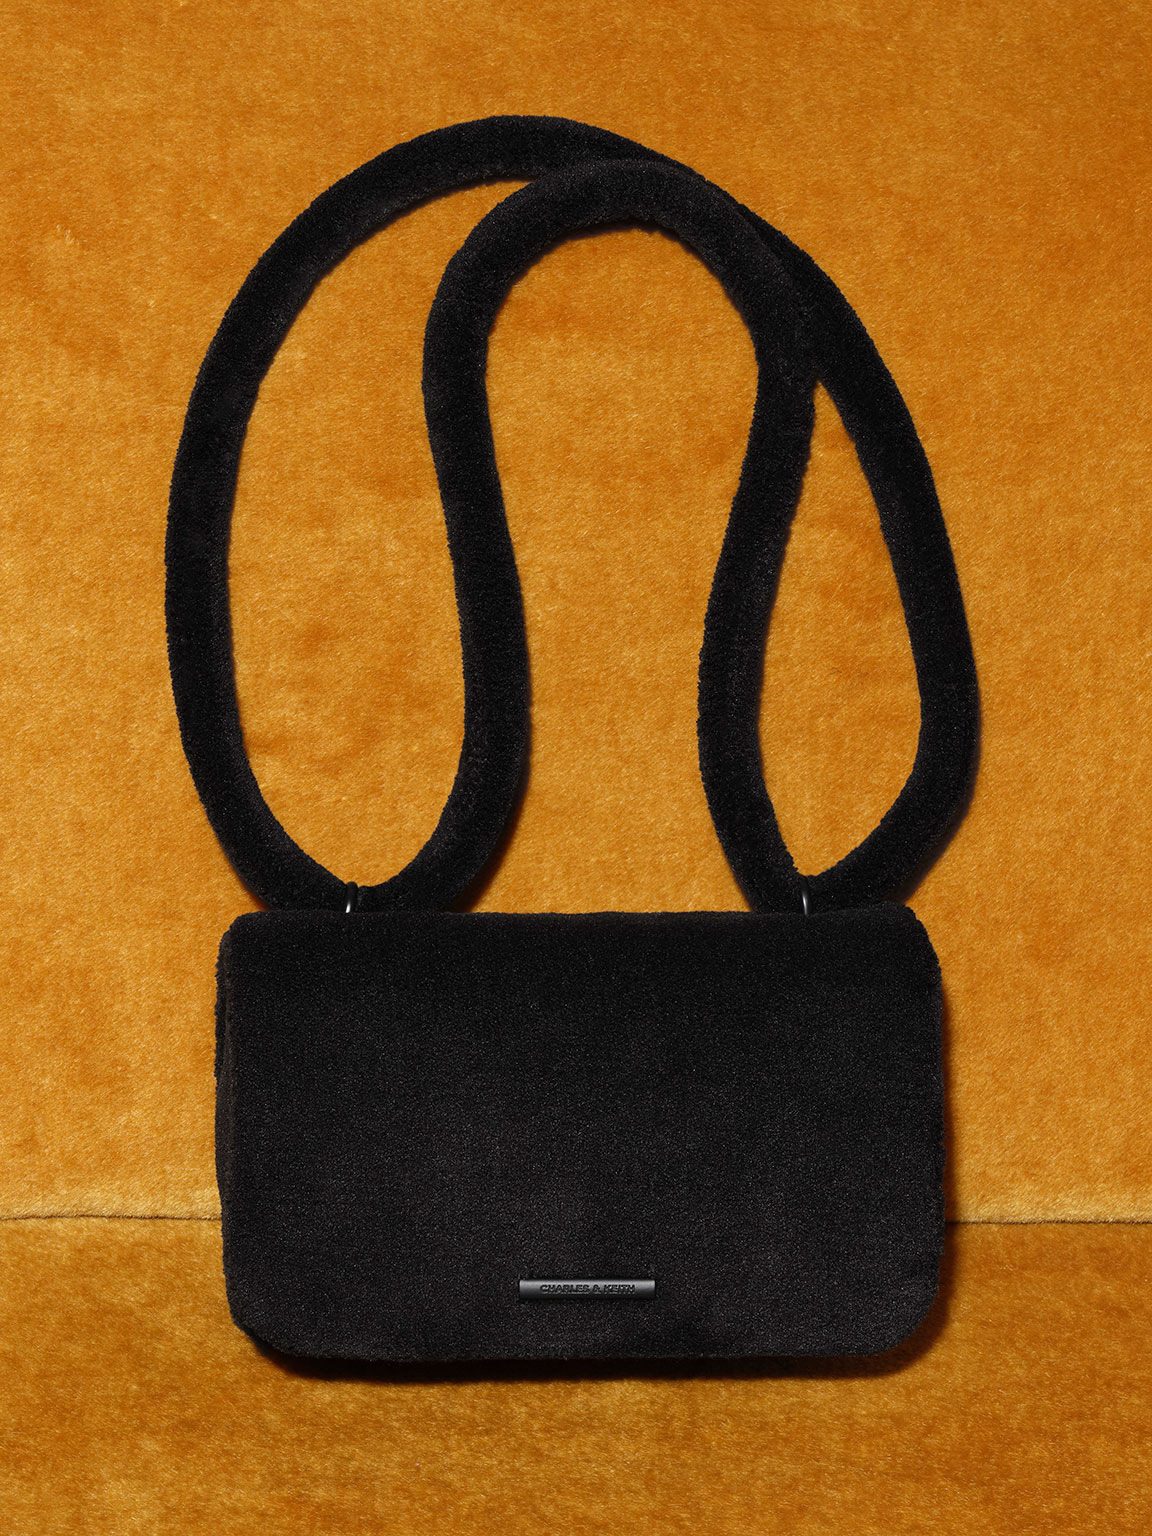 Buy Caprese Multicolored Sling Bag [SLELASMRMUL] Online - Best Price Caprese  Multicolored Sling Bag [SLELASMRMUL] - Justdial Shop Online.